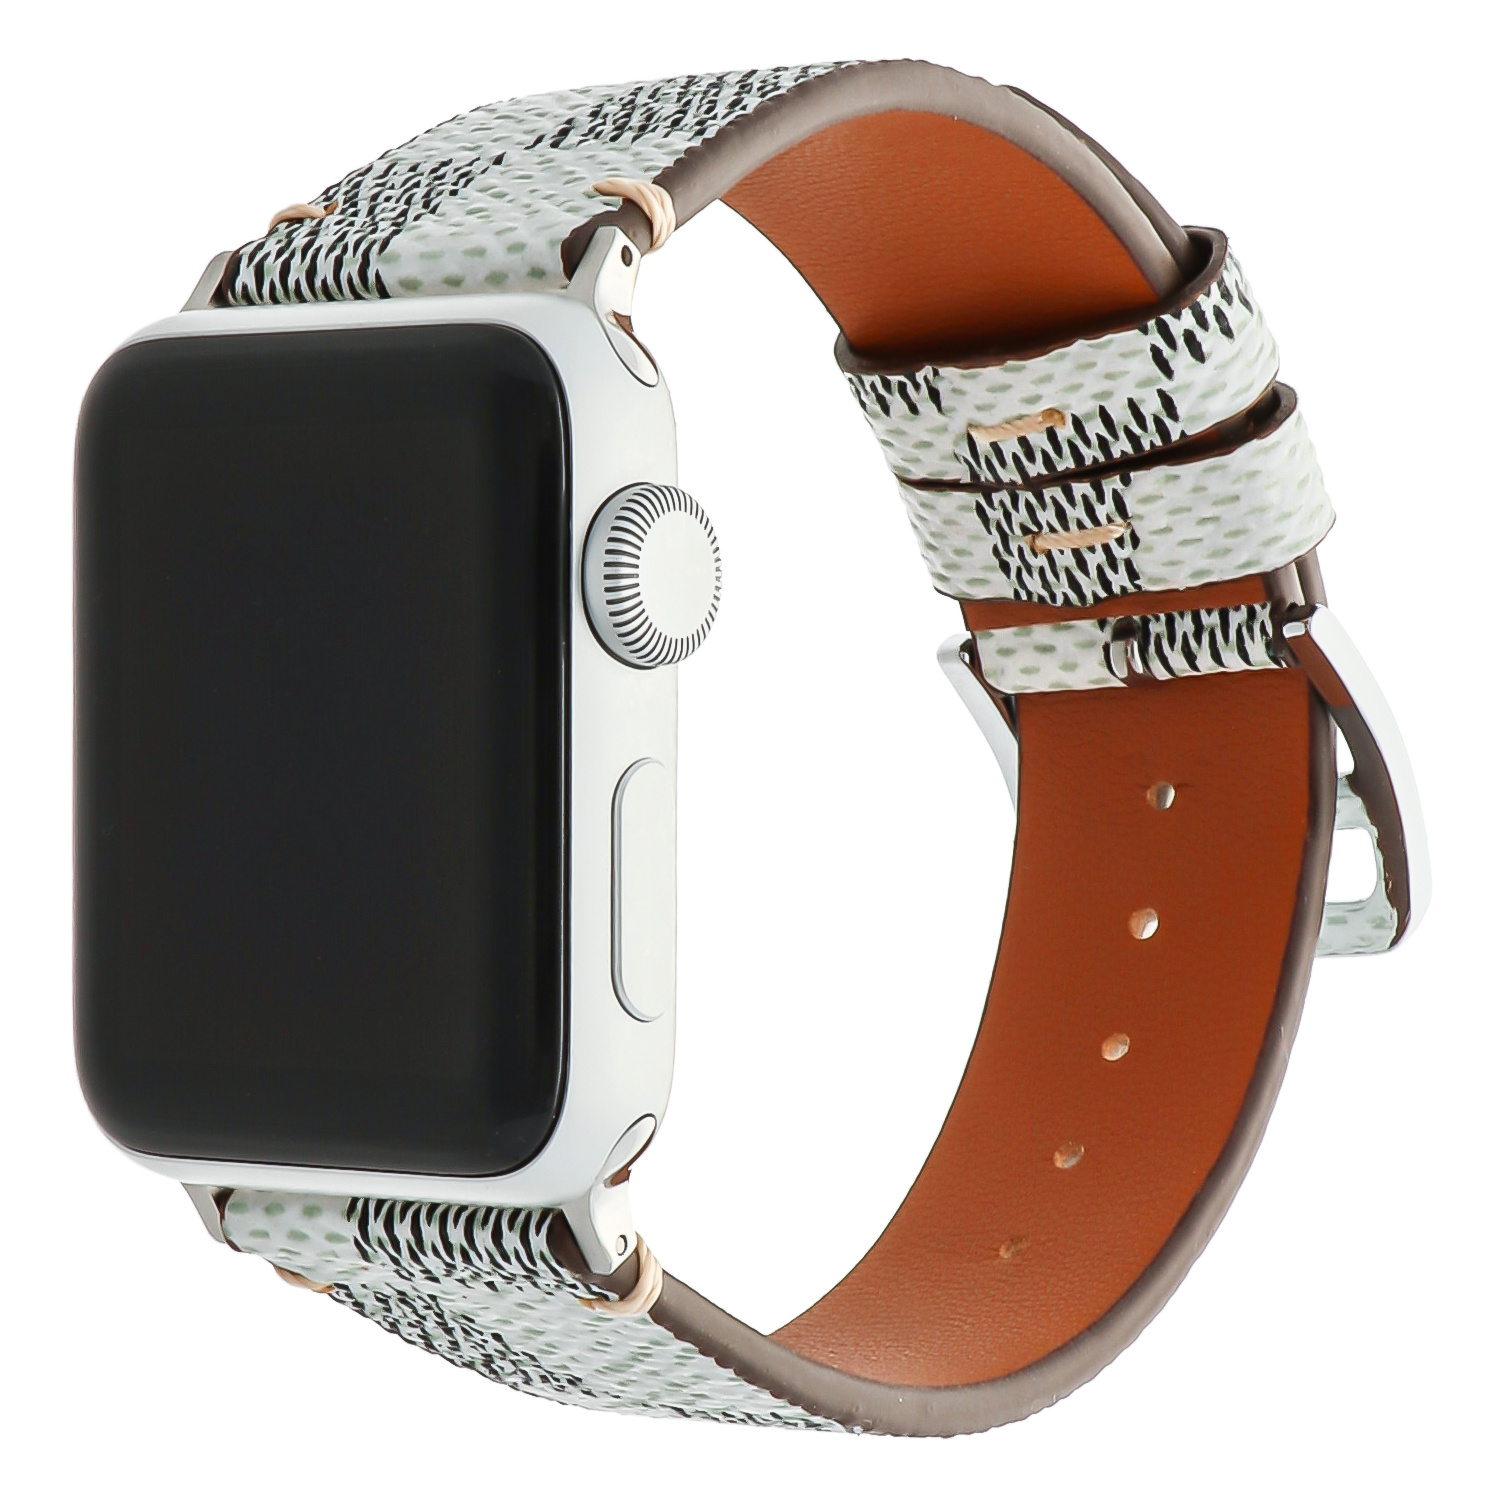  Apple Watch bőr rácsos szalag - fehér